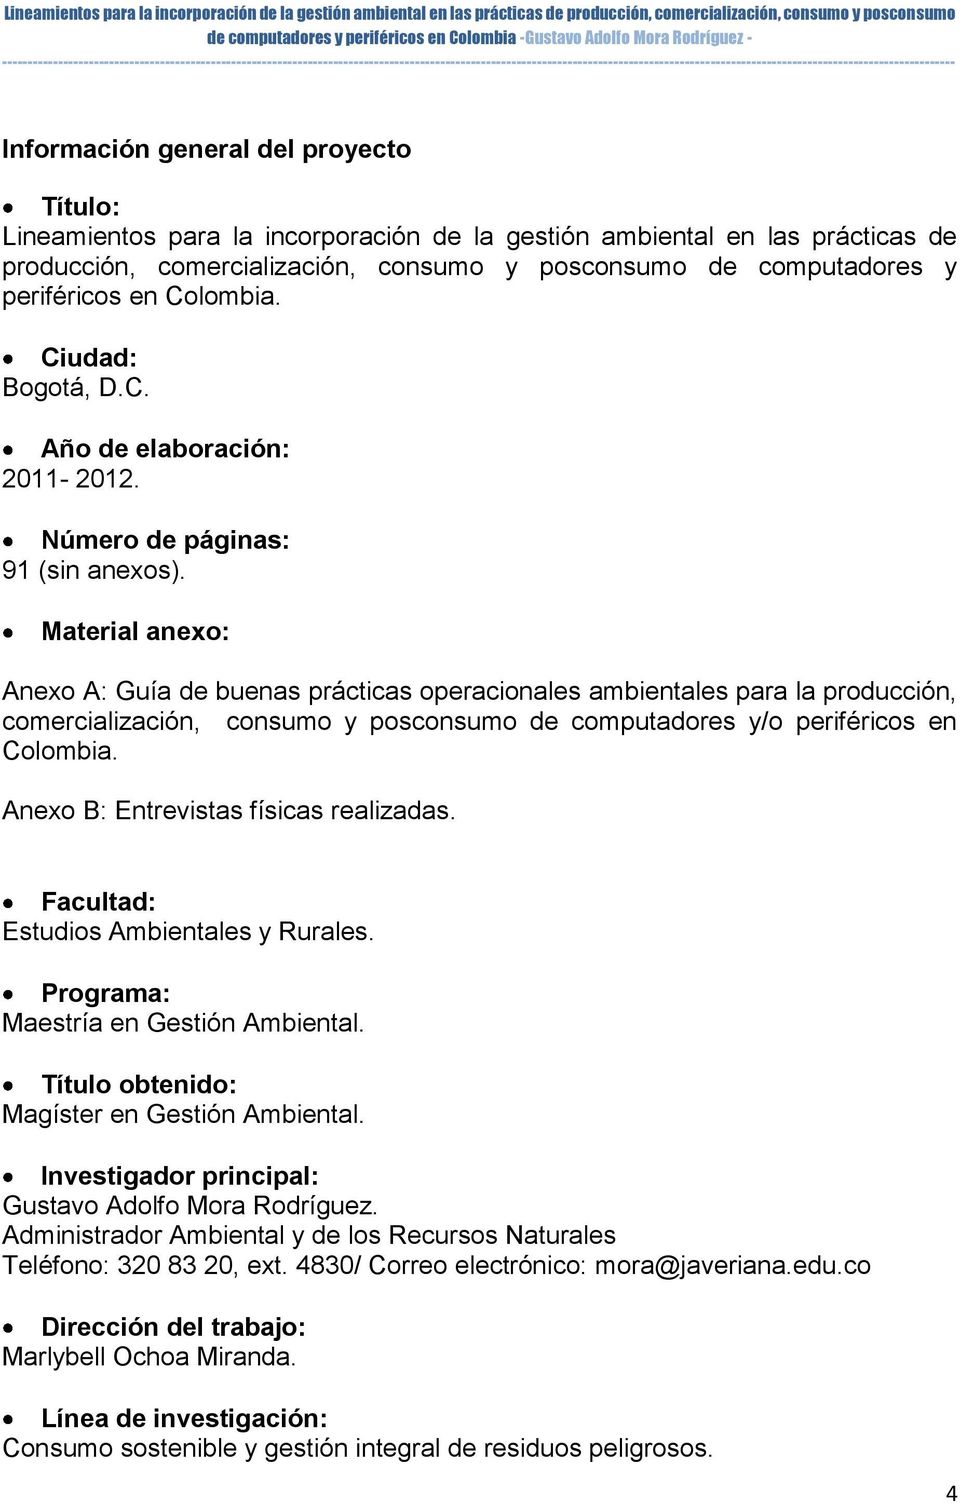 Material anexo: Anexo A: Guía de buenas prácticas operacionales ambientales para la producción, comercialización, consumo y posconsumo de computadores y/o periféricos en Colombia.